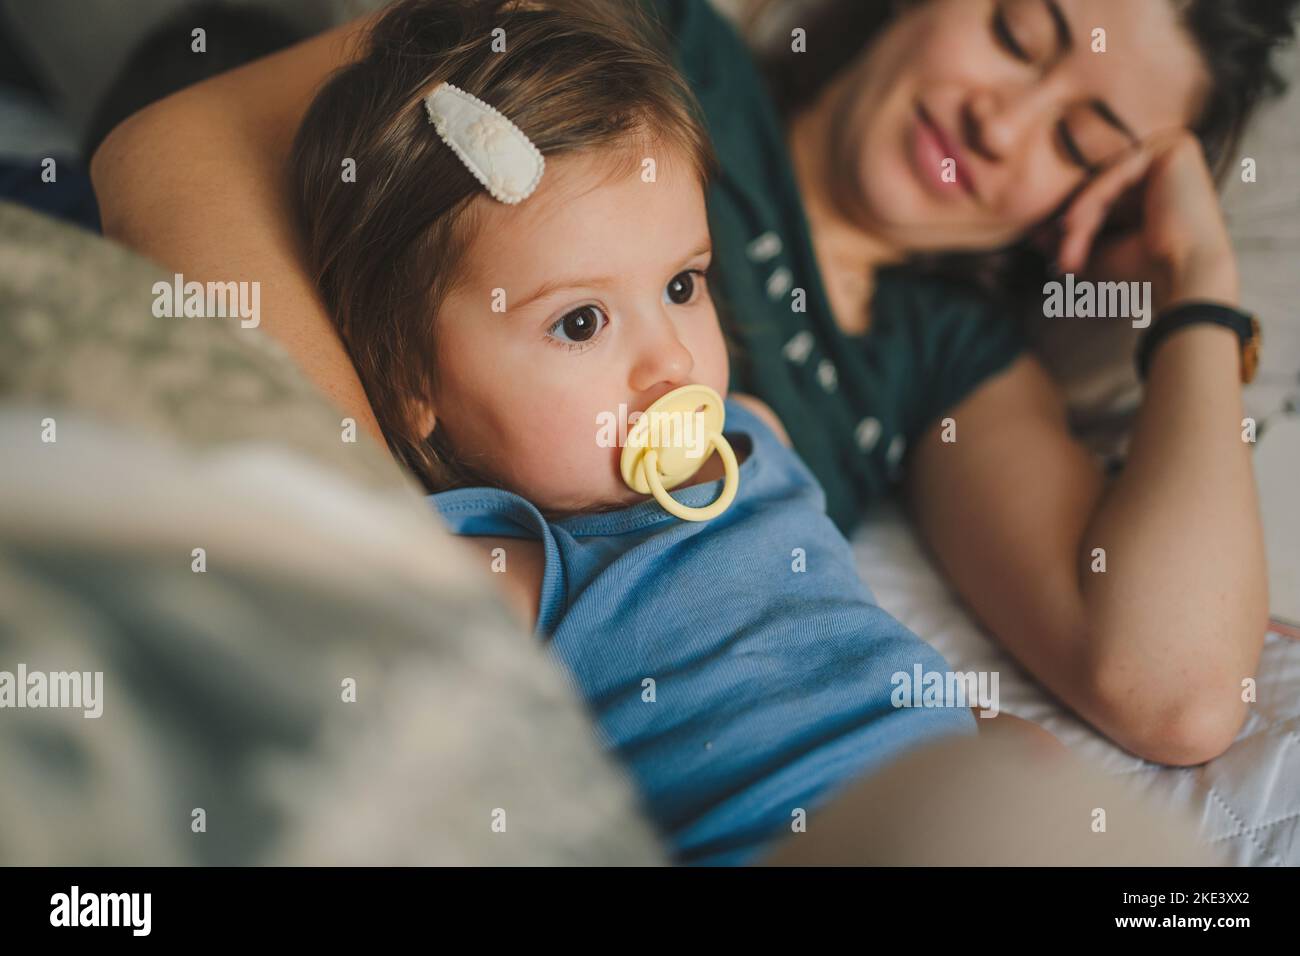 Mère et sa fille enfant fille jouant et s'embrassant en étant allongé dans le lit. Bonne famille aimante. Concept de fête des mères. Un style de vie heureux. Aimez les gens Banque D'Images